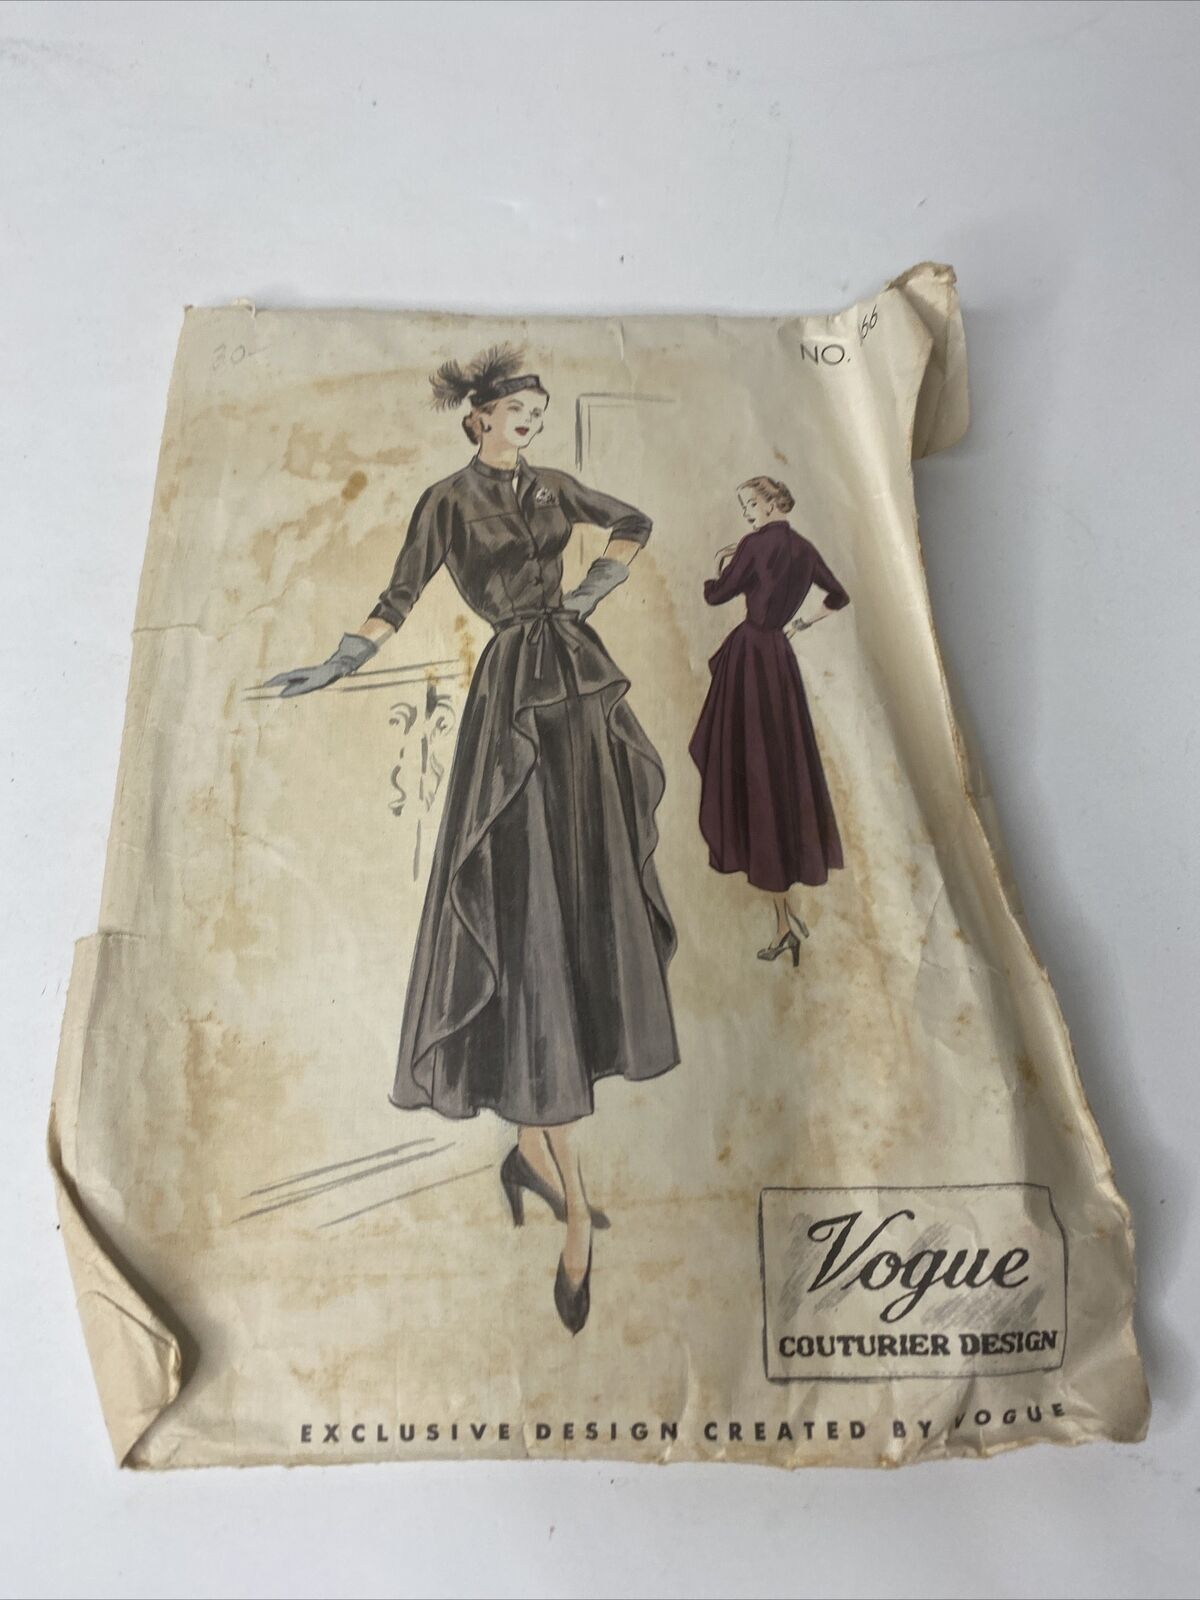 1940's Vintage Vogue Couturier Design Pattern No. 466 Dress Size 18 Un Cut